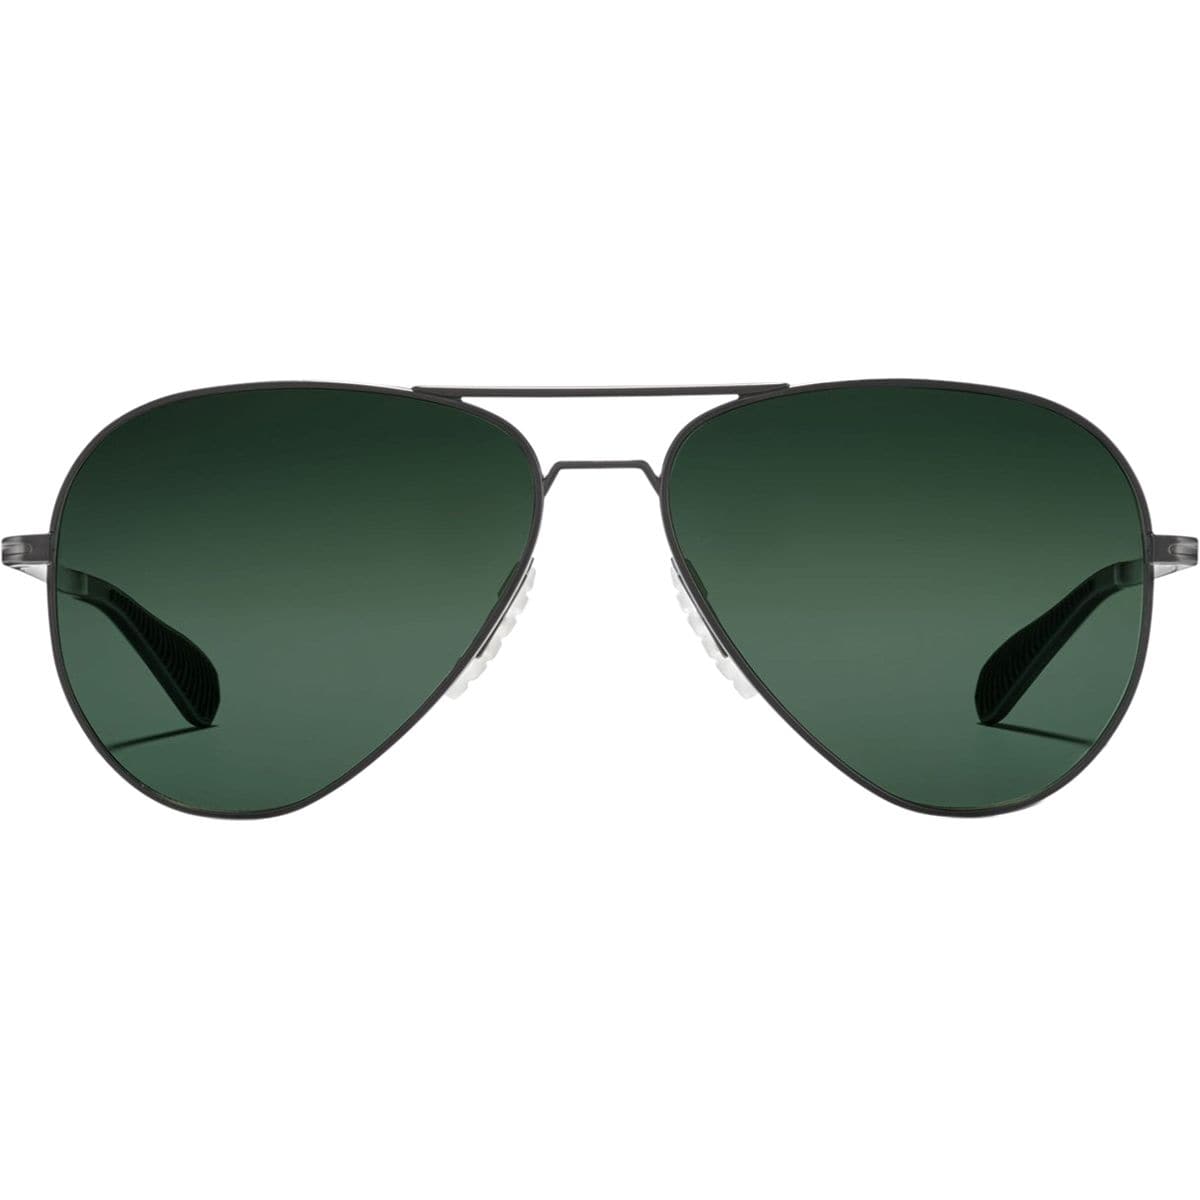 Roka Phantom Alloy Polarized Sunglasses - Men's